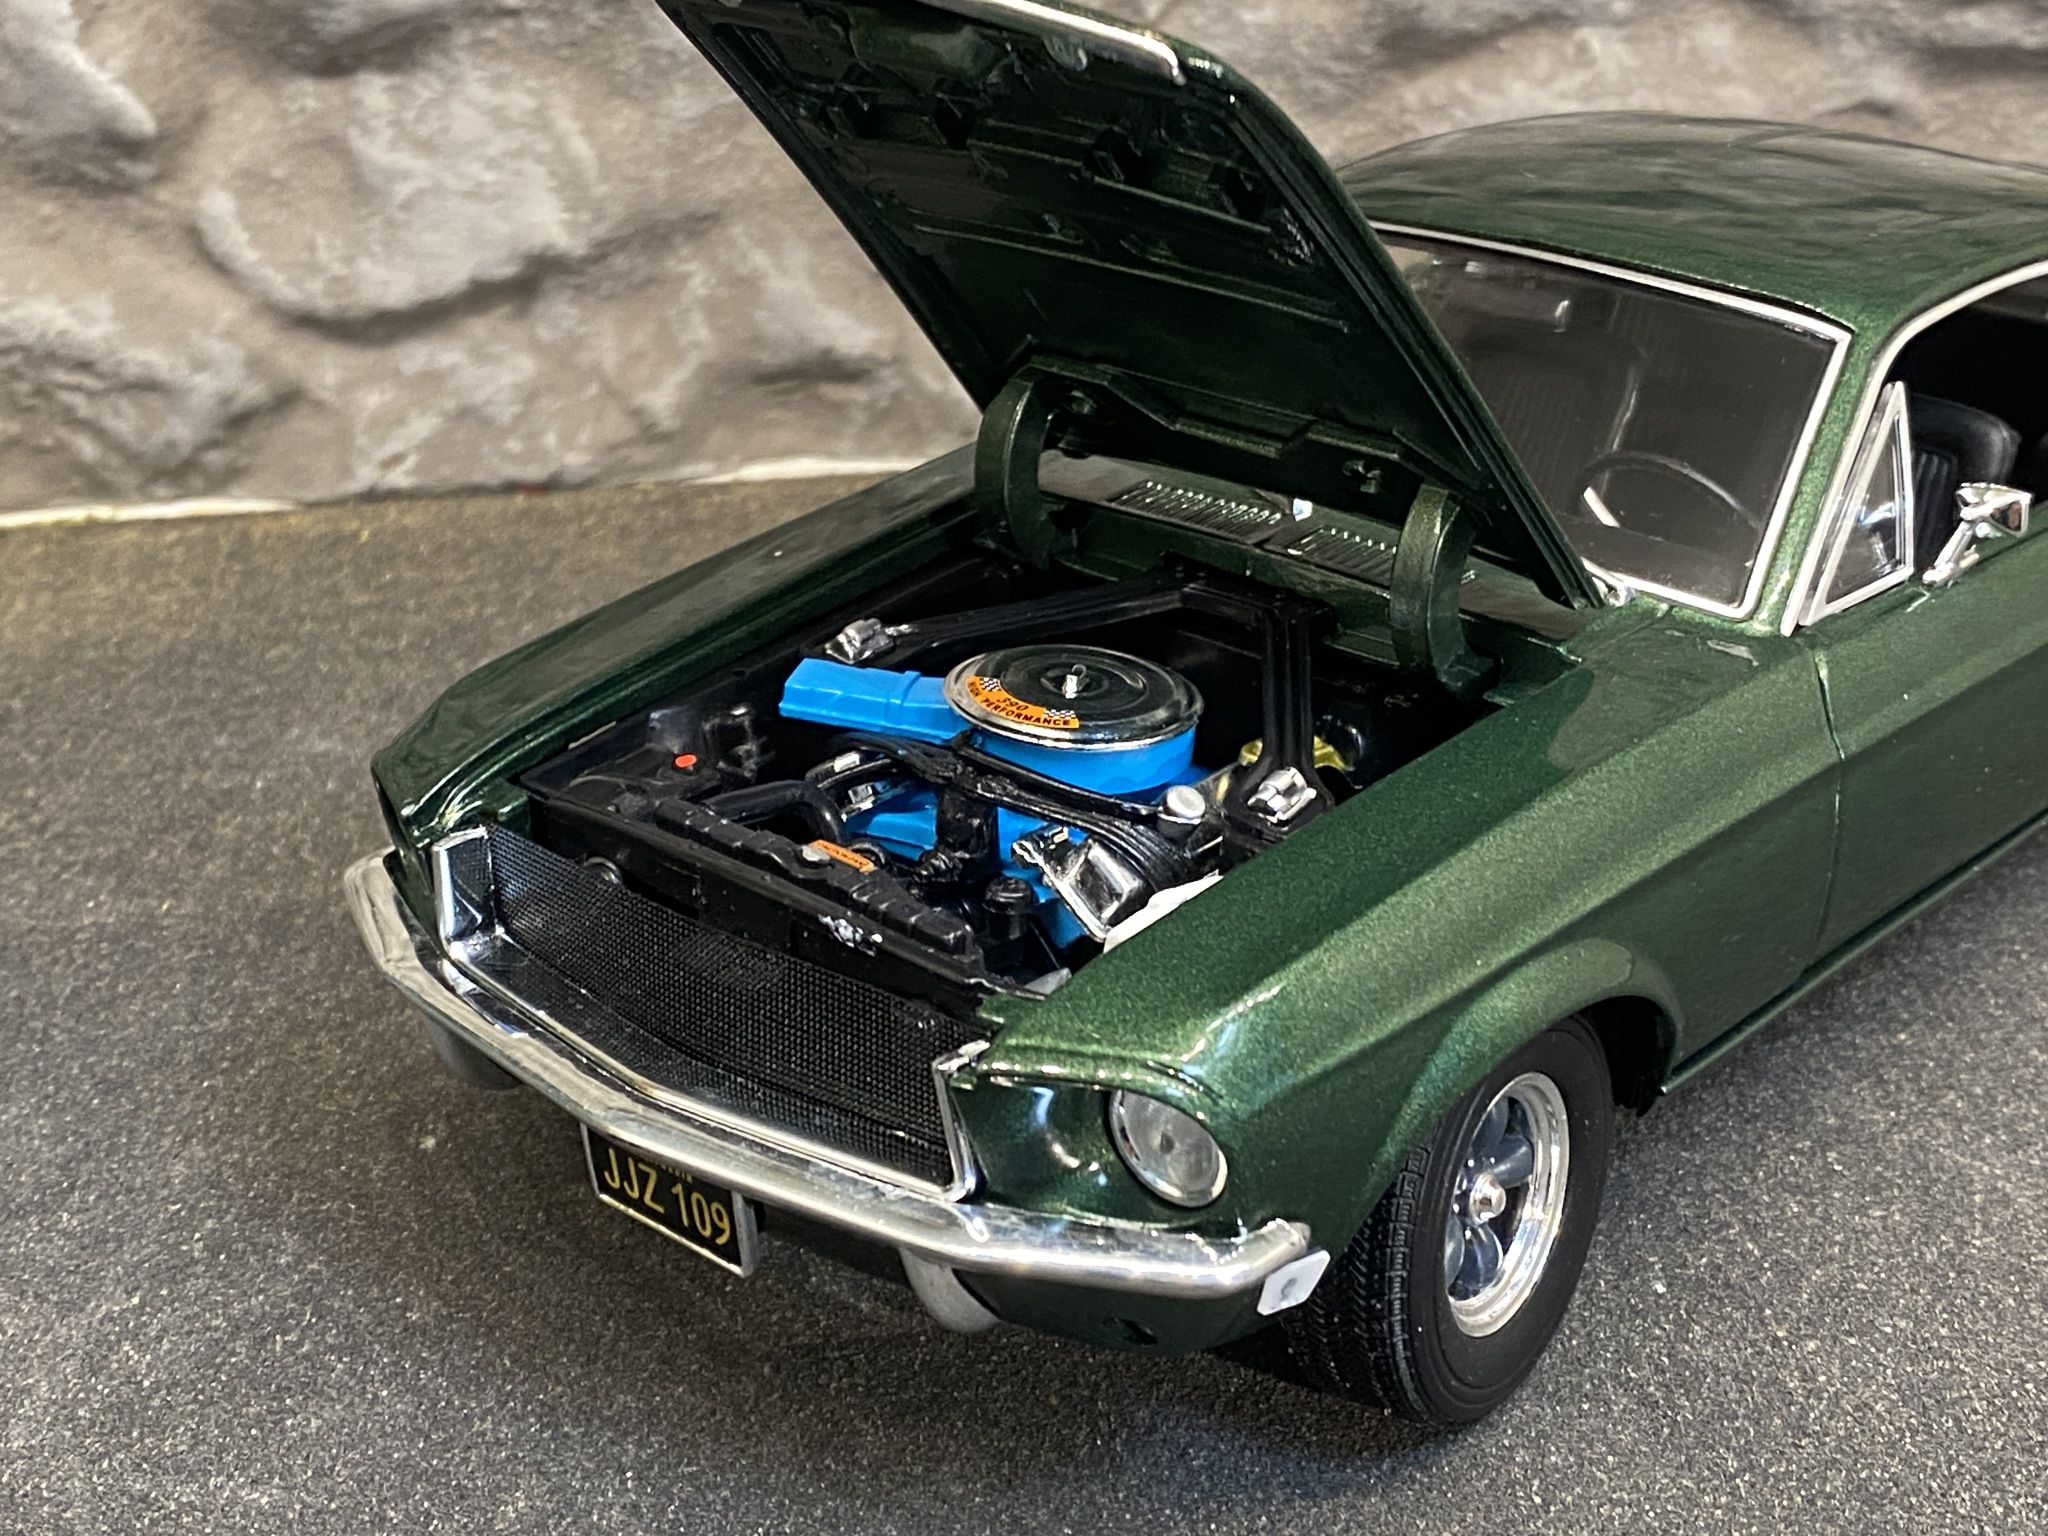 Skala 1/18 1968 Ford Mustang GT, Green metallic, Limited Edition fr Greenlight